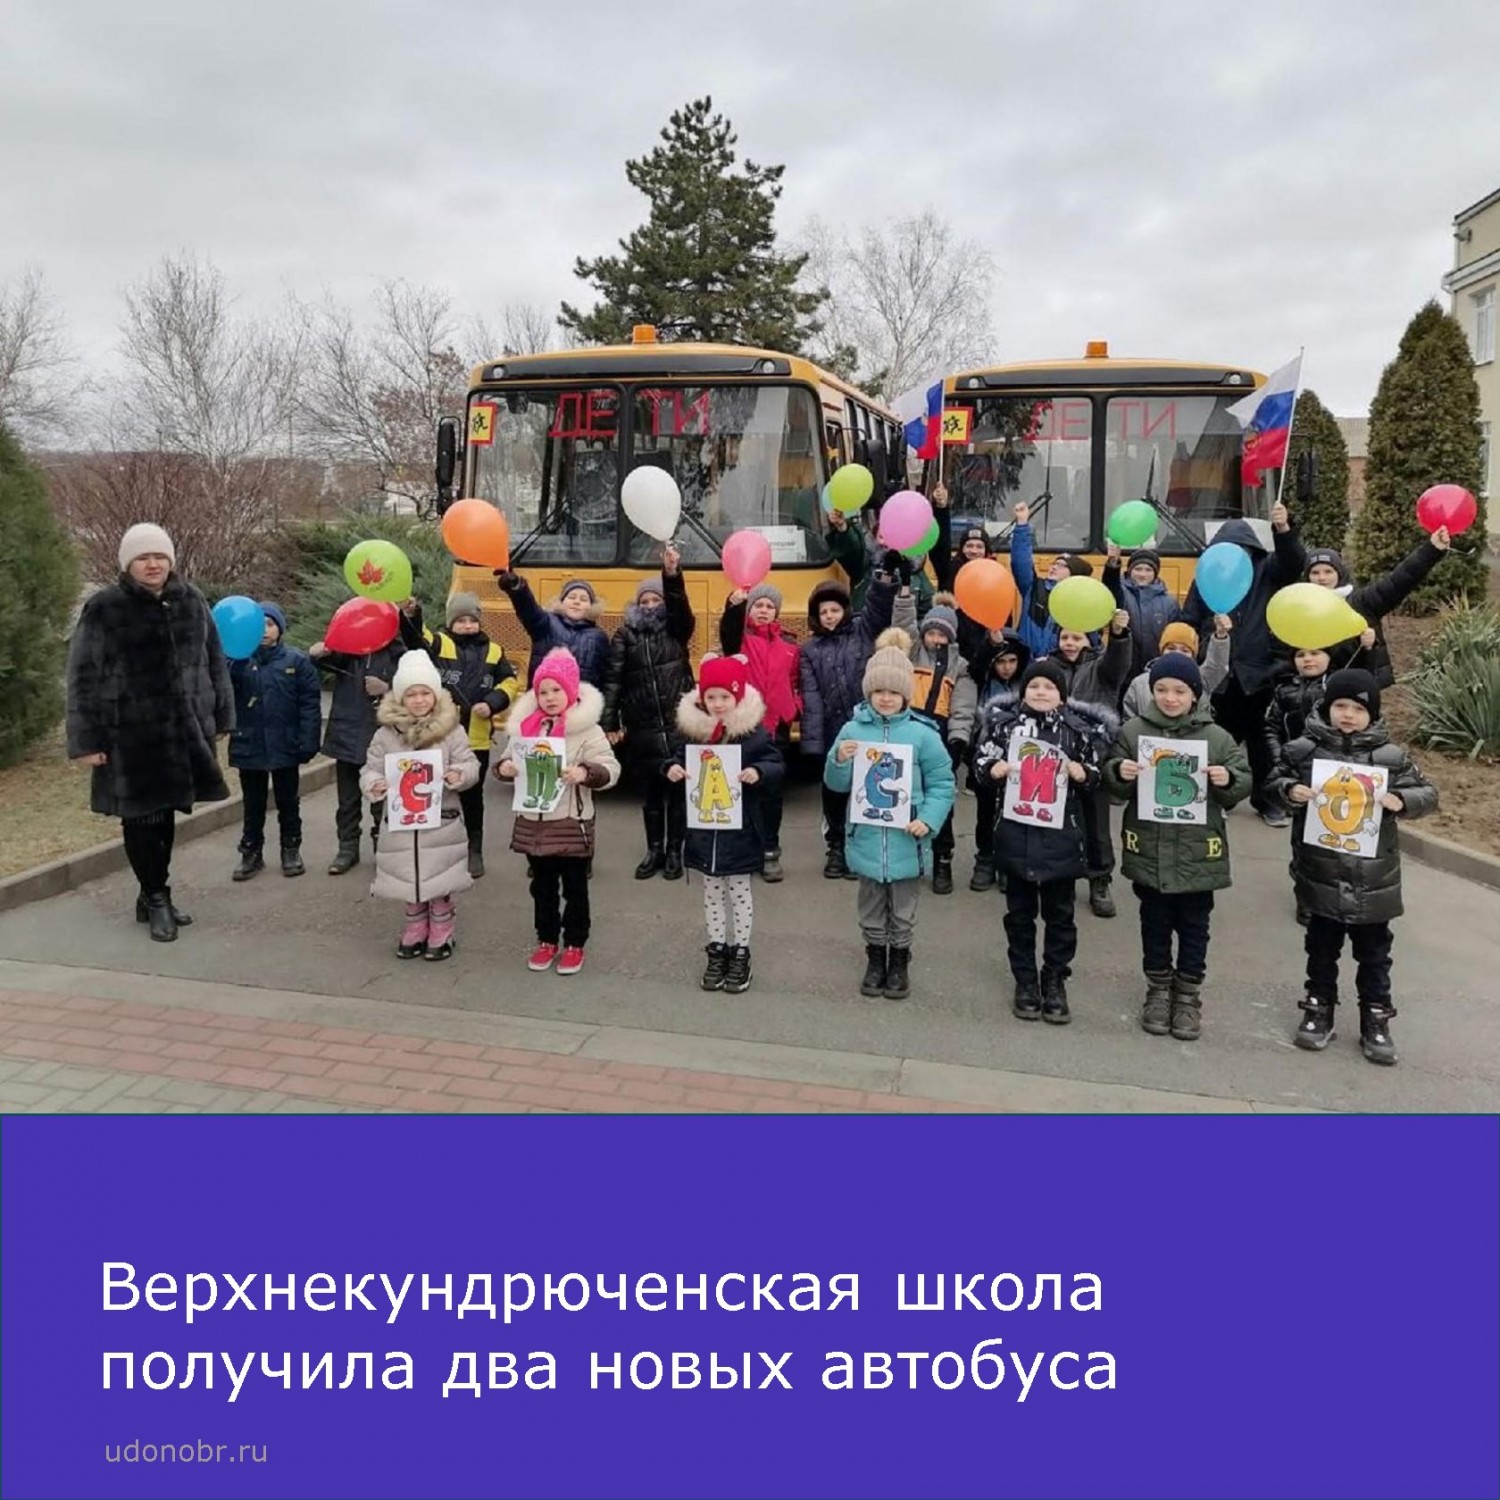 Верхнекундрюченская школа получила два новых автобуса